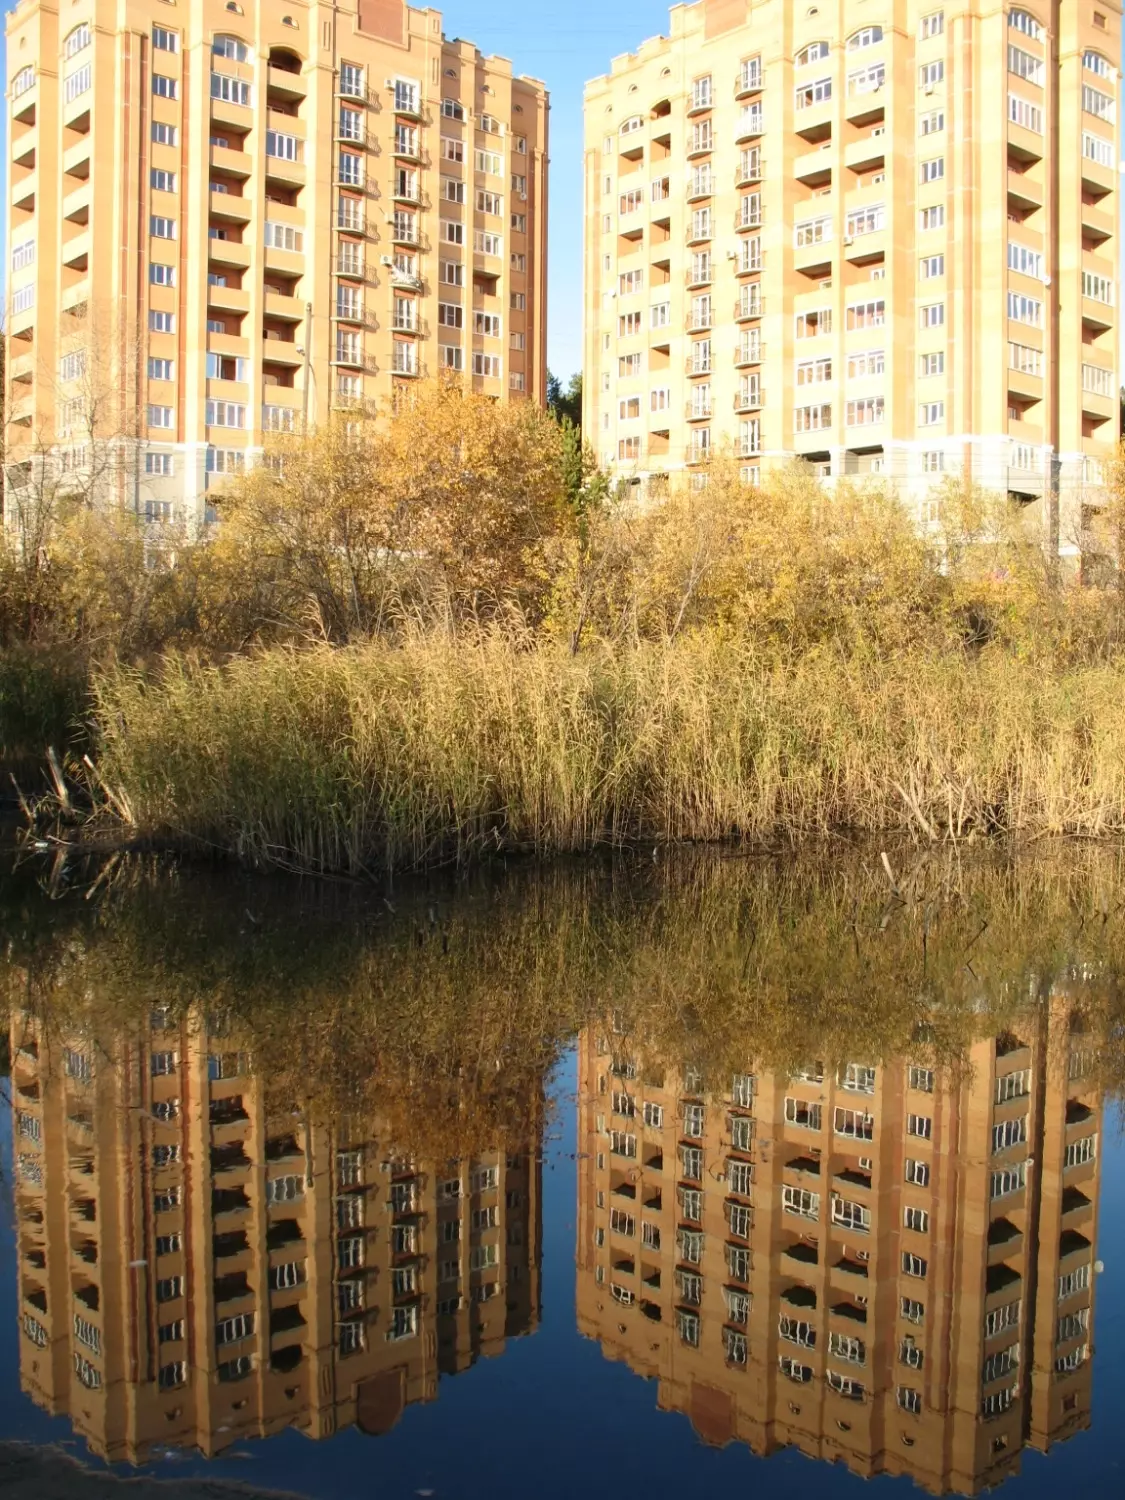 Нижняя Ельцовка - микрорайон Новосибирска